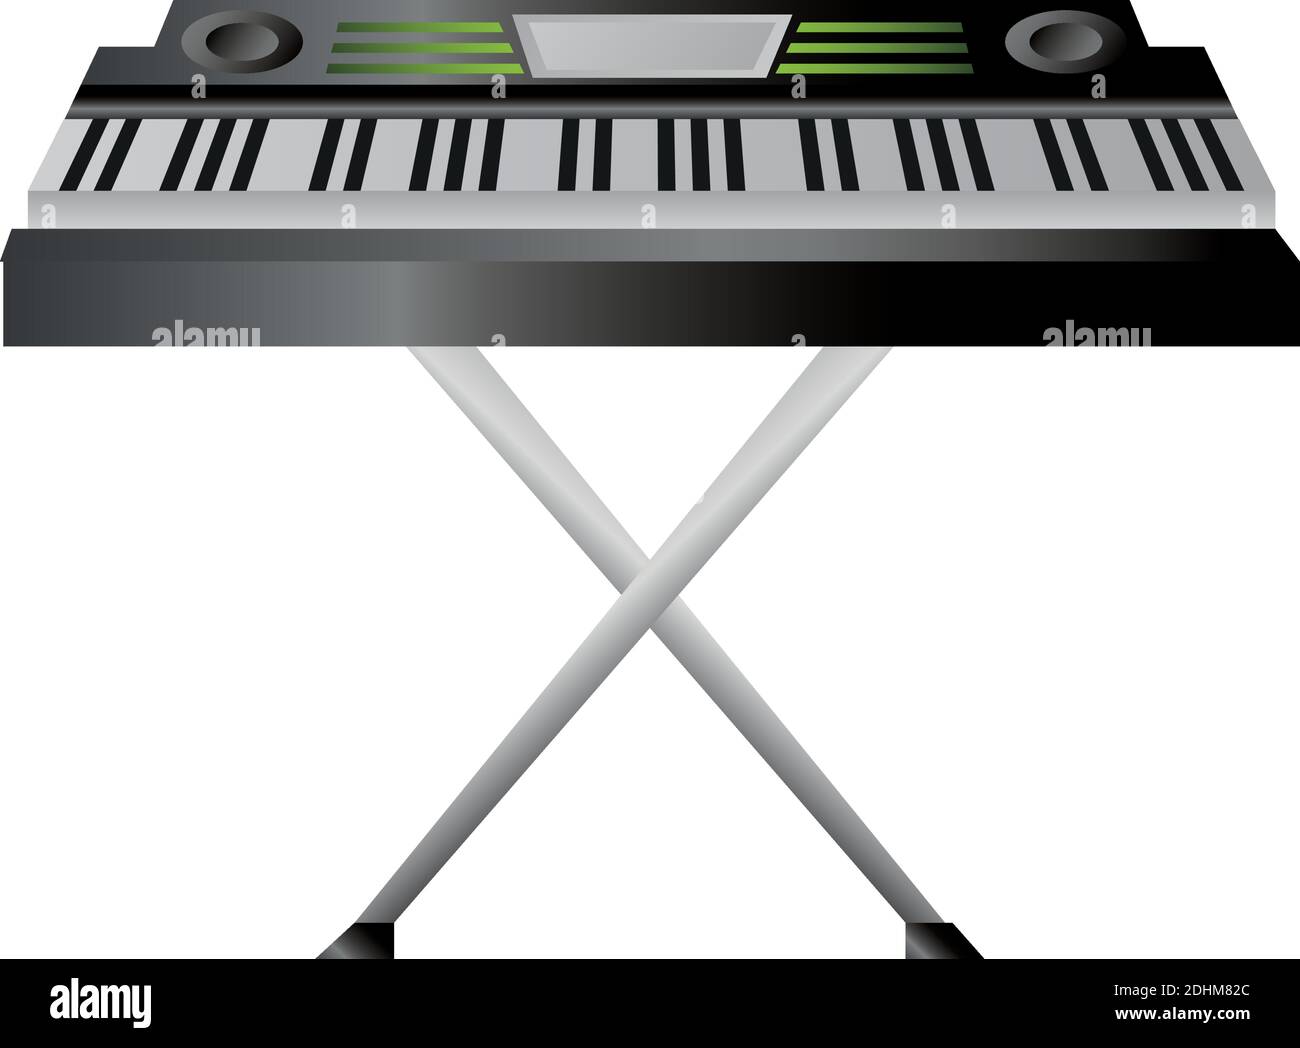 sintetizador teclado instrumento musical vector ilustración icono detallado  Imagen Vector de stock - Alamy